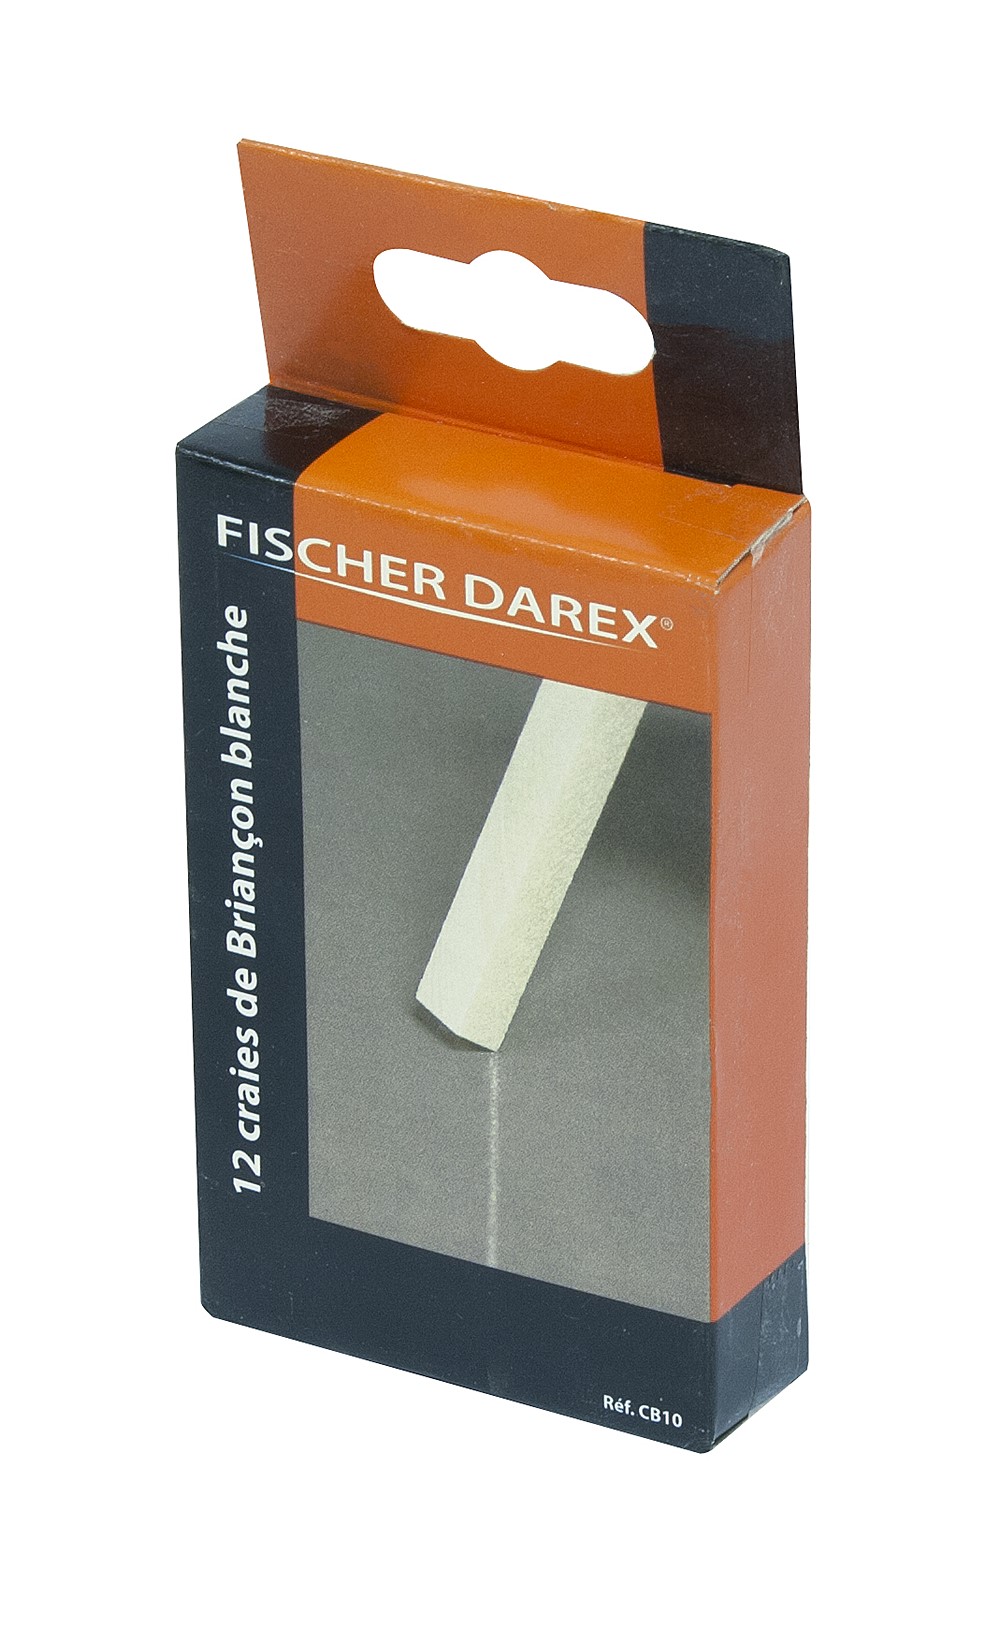 Craie de briancon x12 - FISCHER DAREX